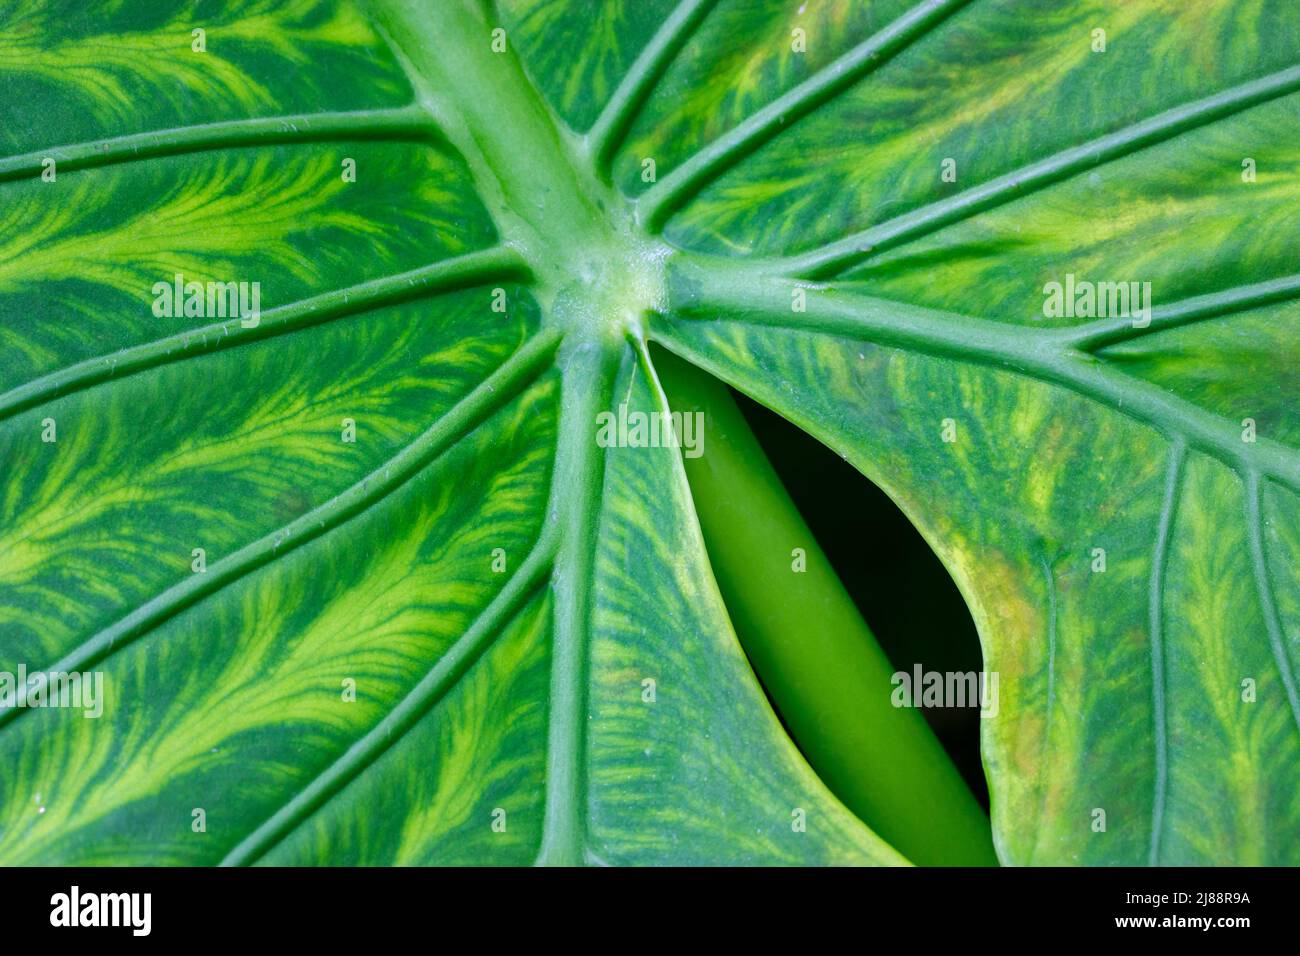 Alocasia Macrorhizo verde esotico foglia texture. Pianta tropicale della famiglia Arum. Foto Stock